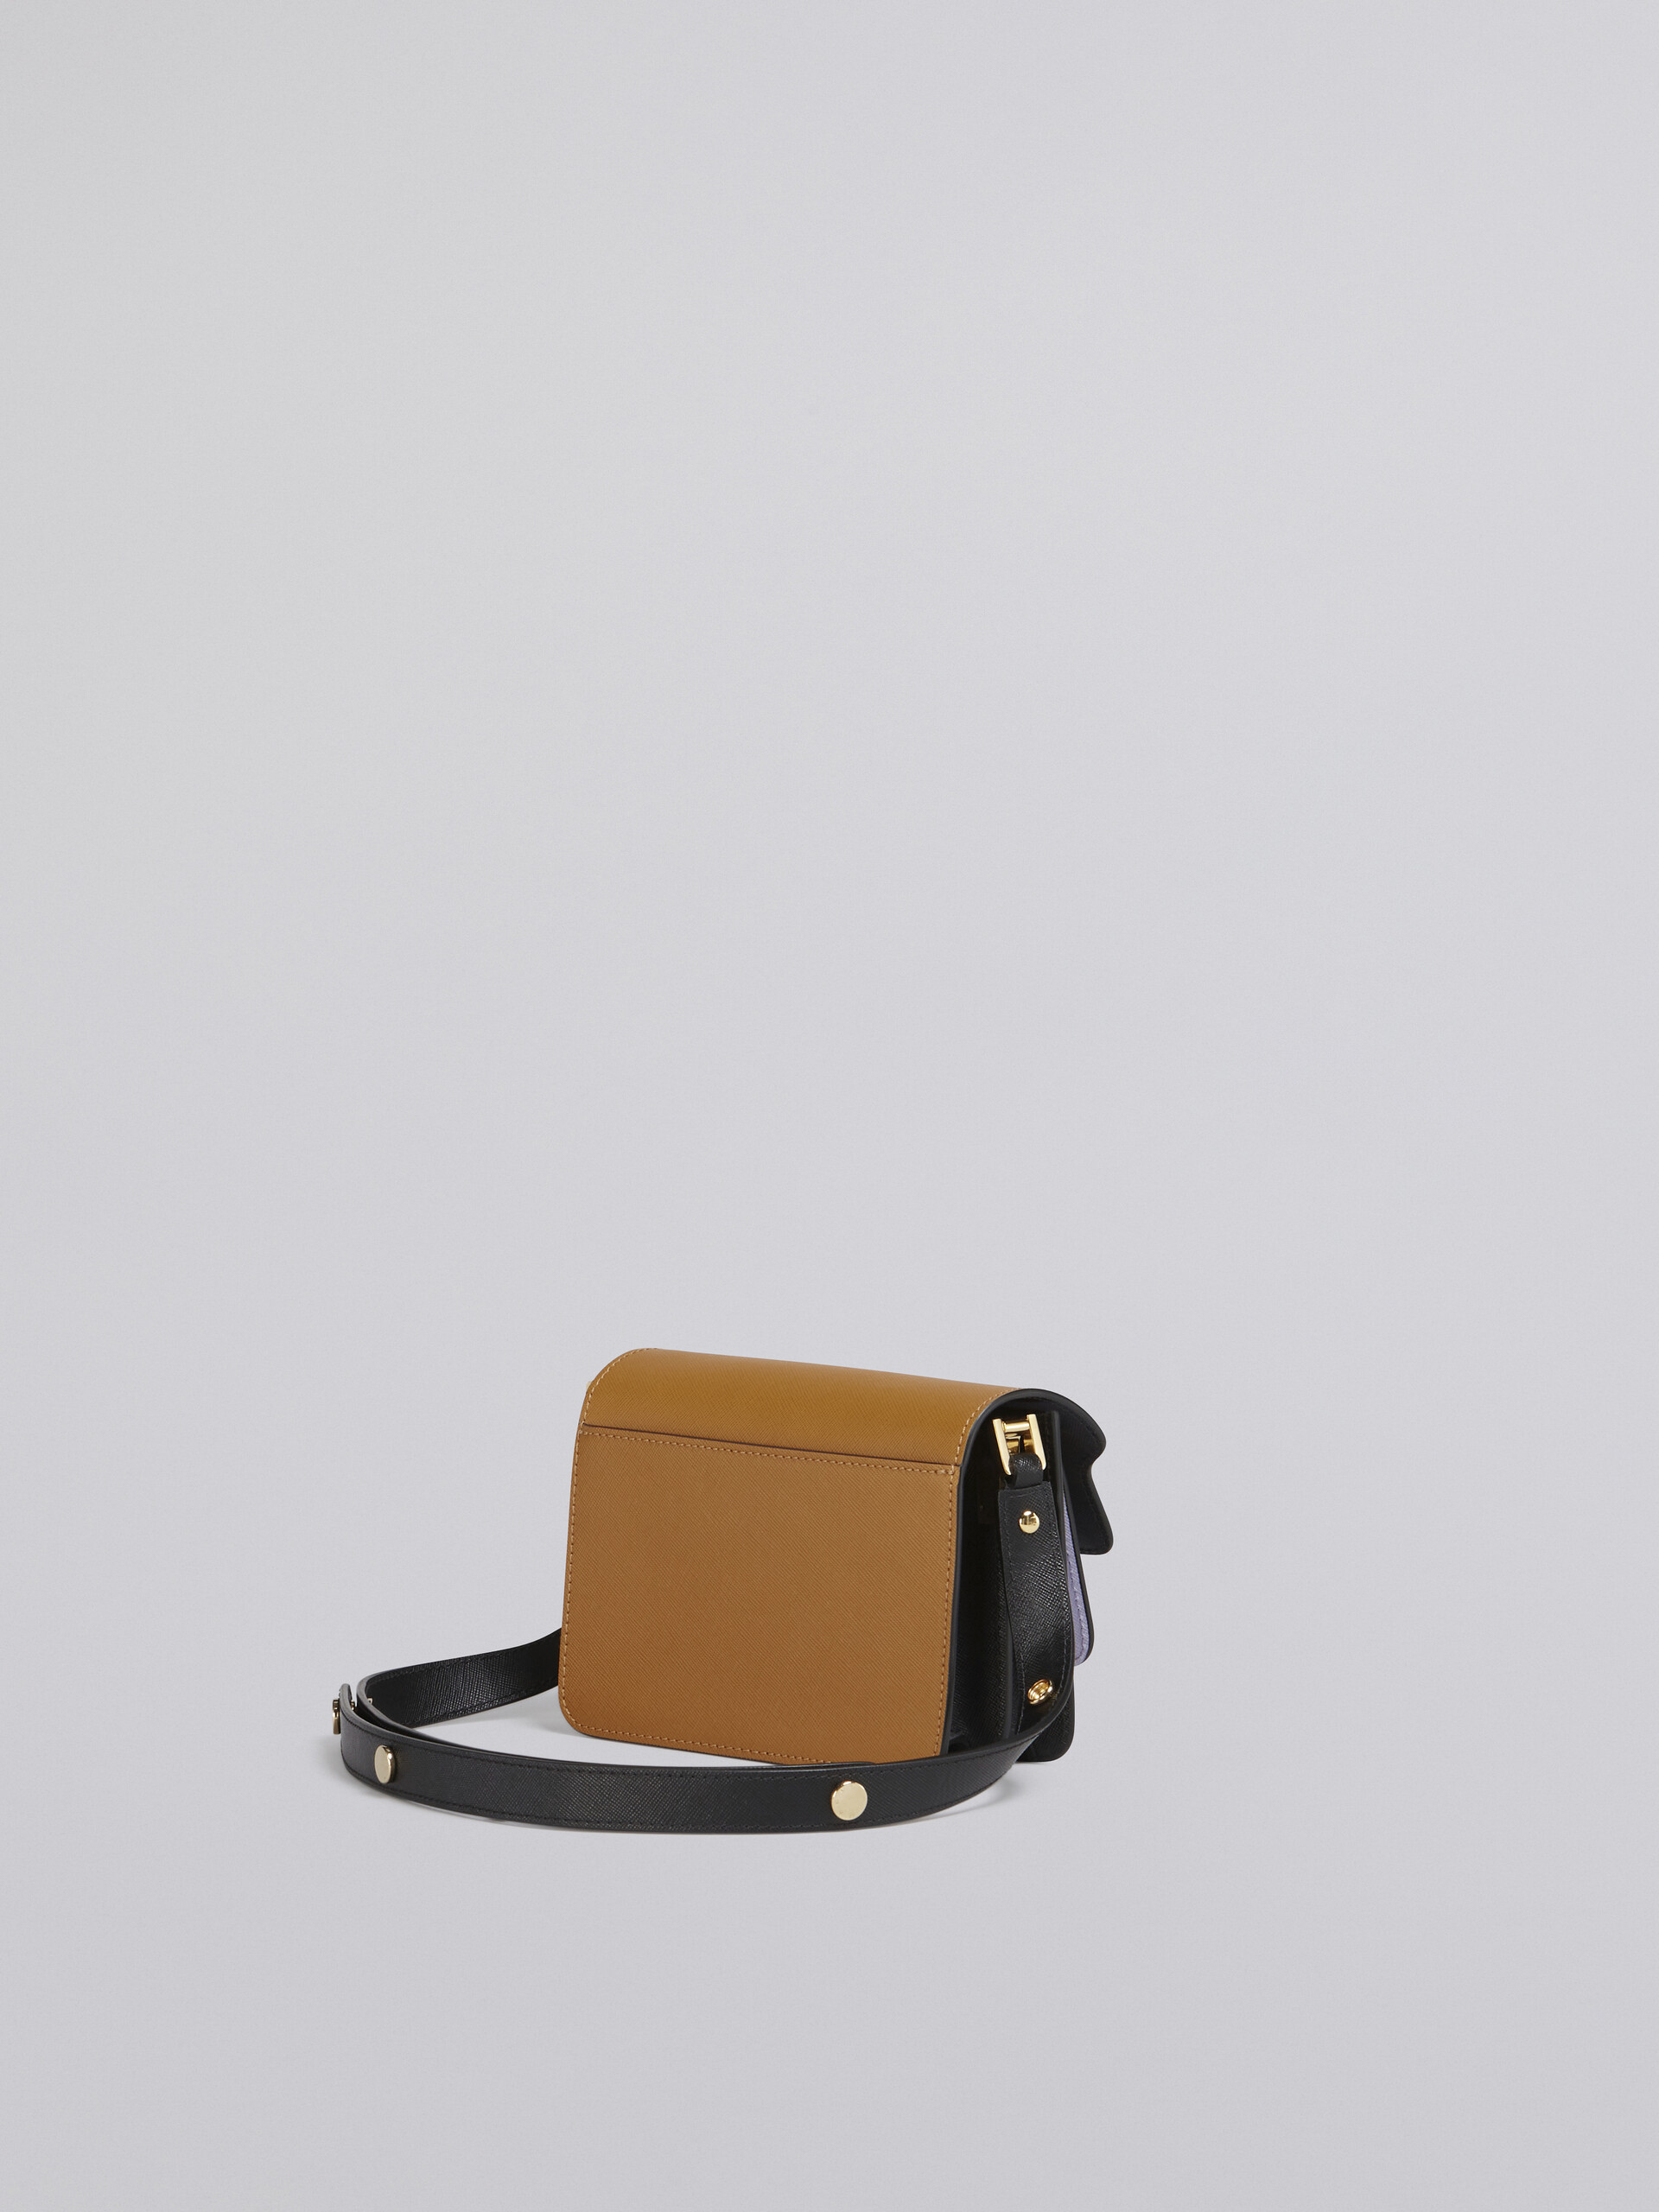 Mini sac TRUNK en cuir saffiano marron, lilas et noir - Sacs portés épaule - Image 3